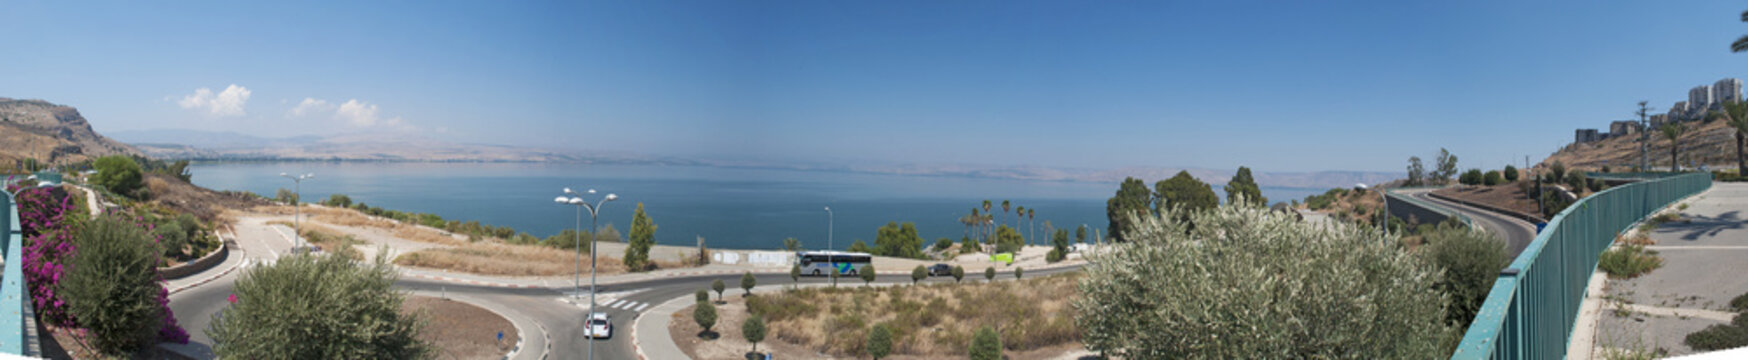 Israele: il lago di Tiberiade il 2 settembre 2015. Il lago di Tiberiade è il lago d'acqua dolce più basso della Terra